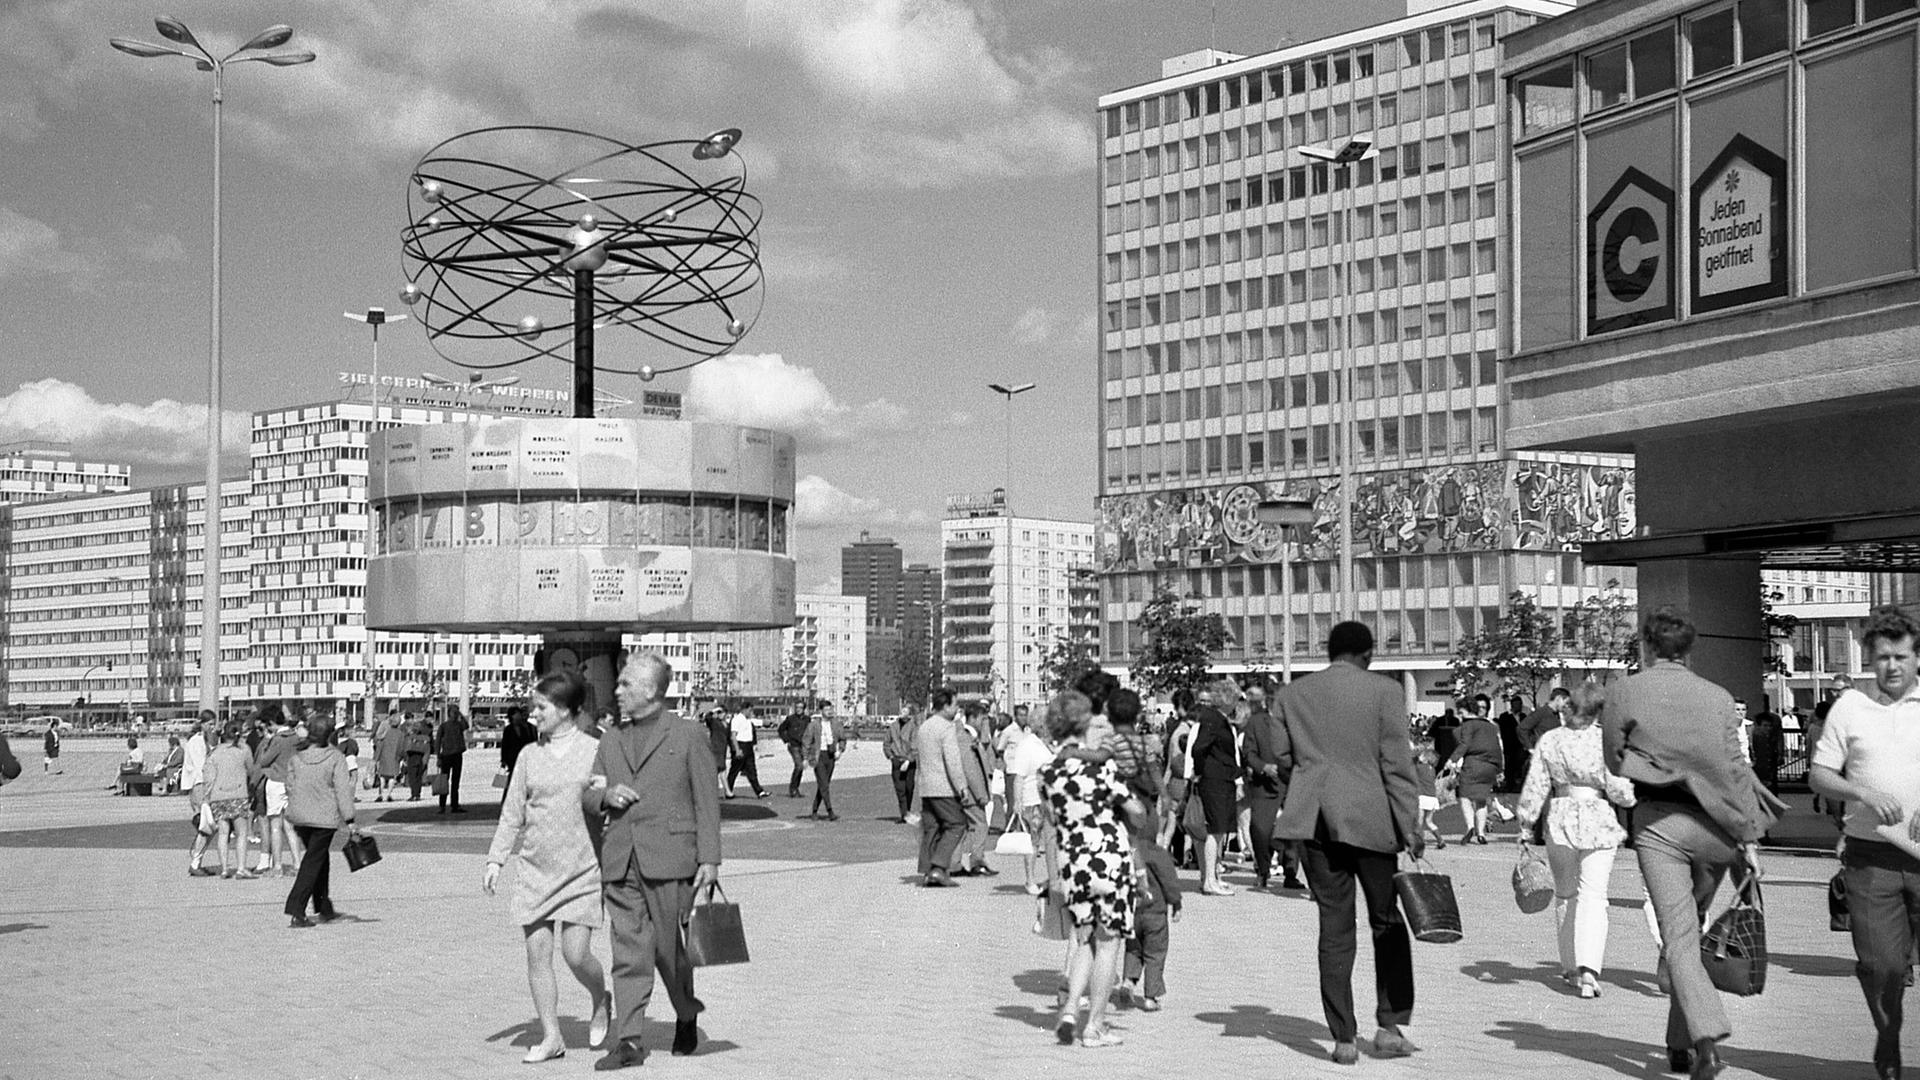 Historische Schwarzweiß-Aufnahme vom Alexanderplatz mit der Weltzeituhr kurz nach der Aufstellung 1969. Die Uhrenanlage mit einer symbolischen Weltdarstellung im Berliner Ortsteil Mitte enthält auf ihrer metallenen Rotunde die Namen von 148 Städten. 